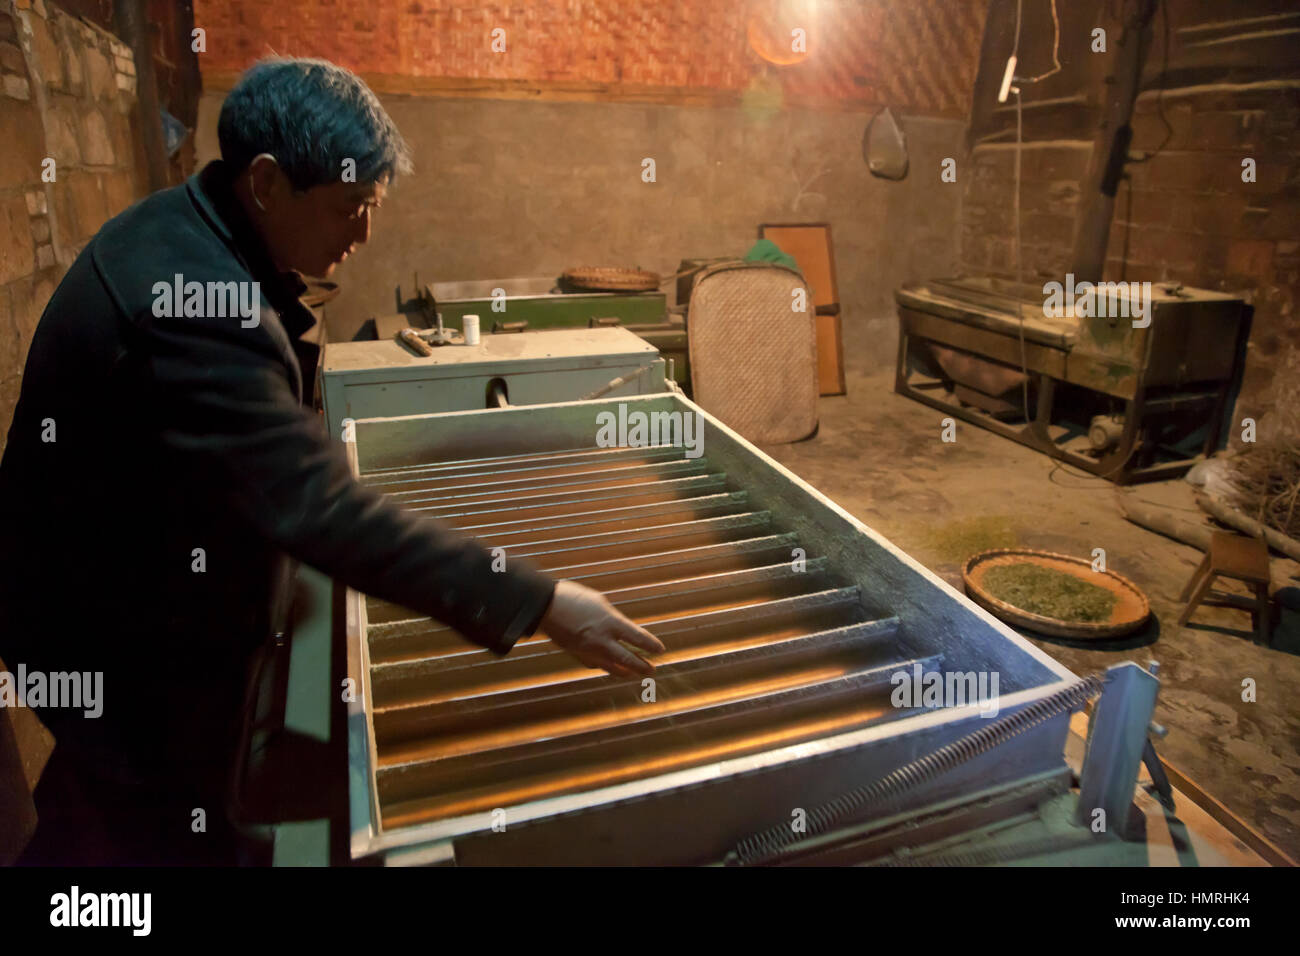 Un homme singes tendres bourgeons de thé dans les bacs de la lunette jiggling machine électrique pour préparer le thé vert pour l'emballage et la vente en Chine. Banque D'Images